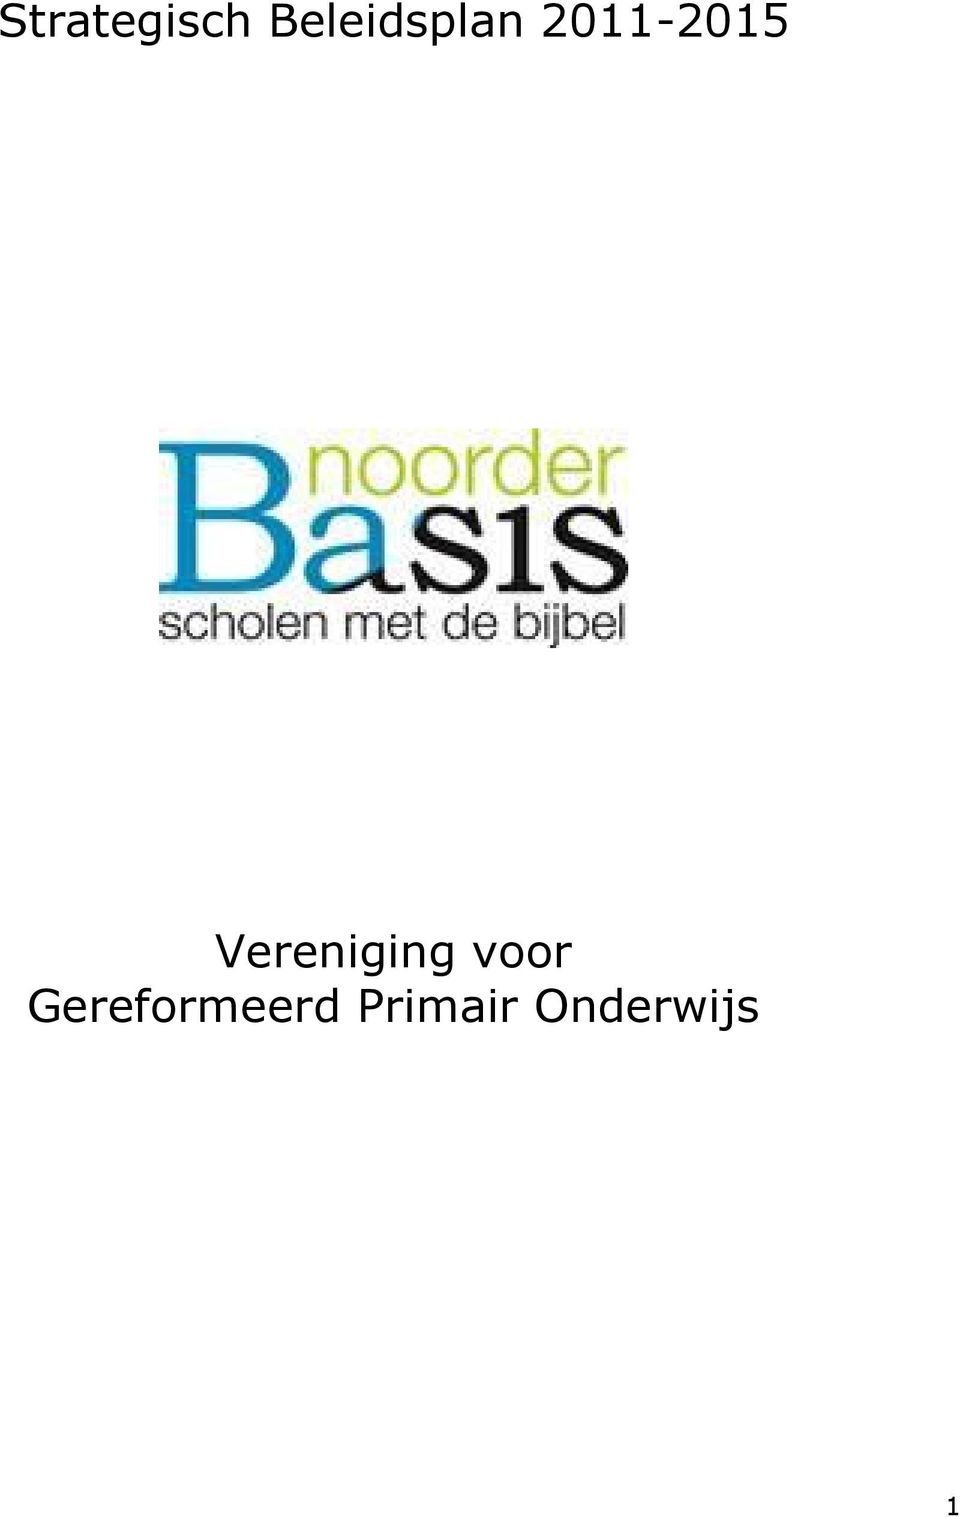 2011-2015 Vereniging